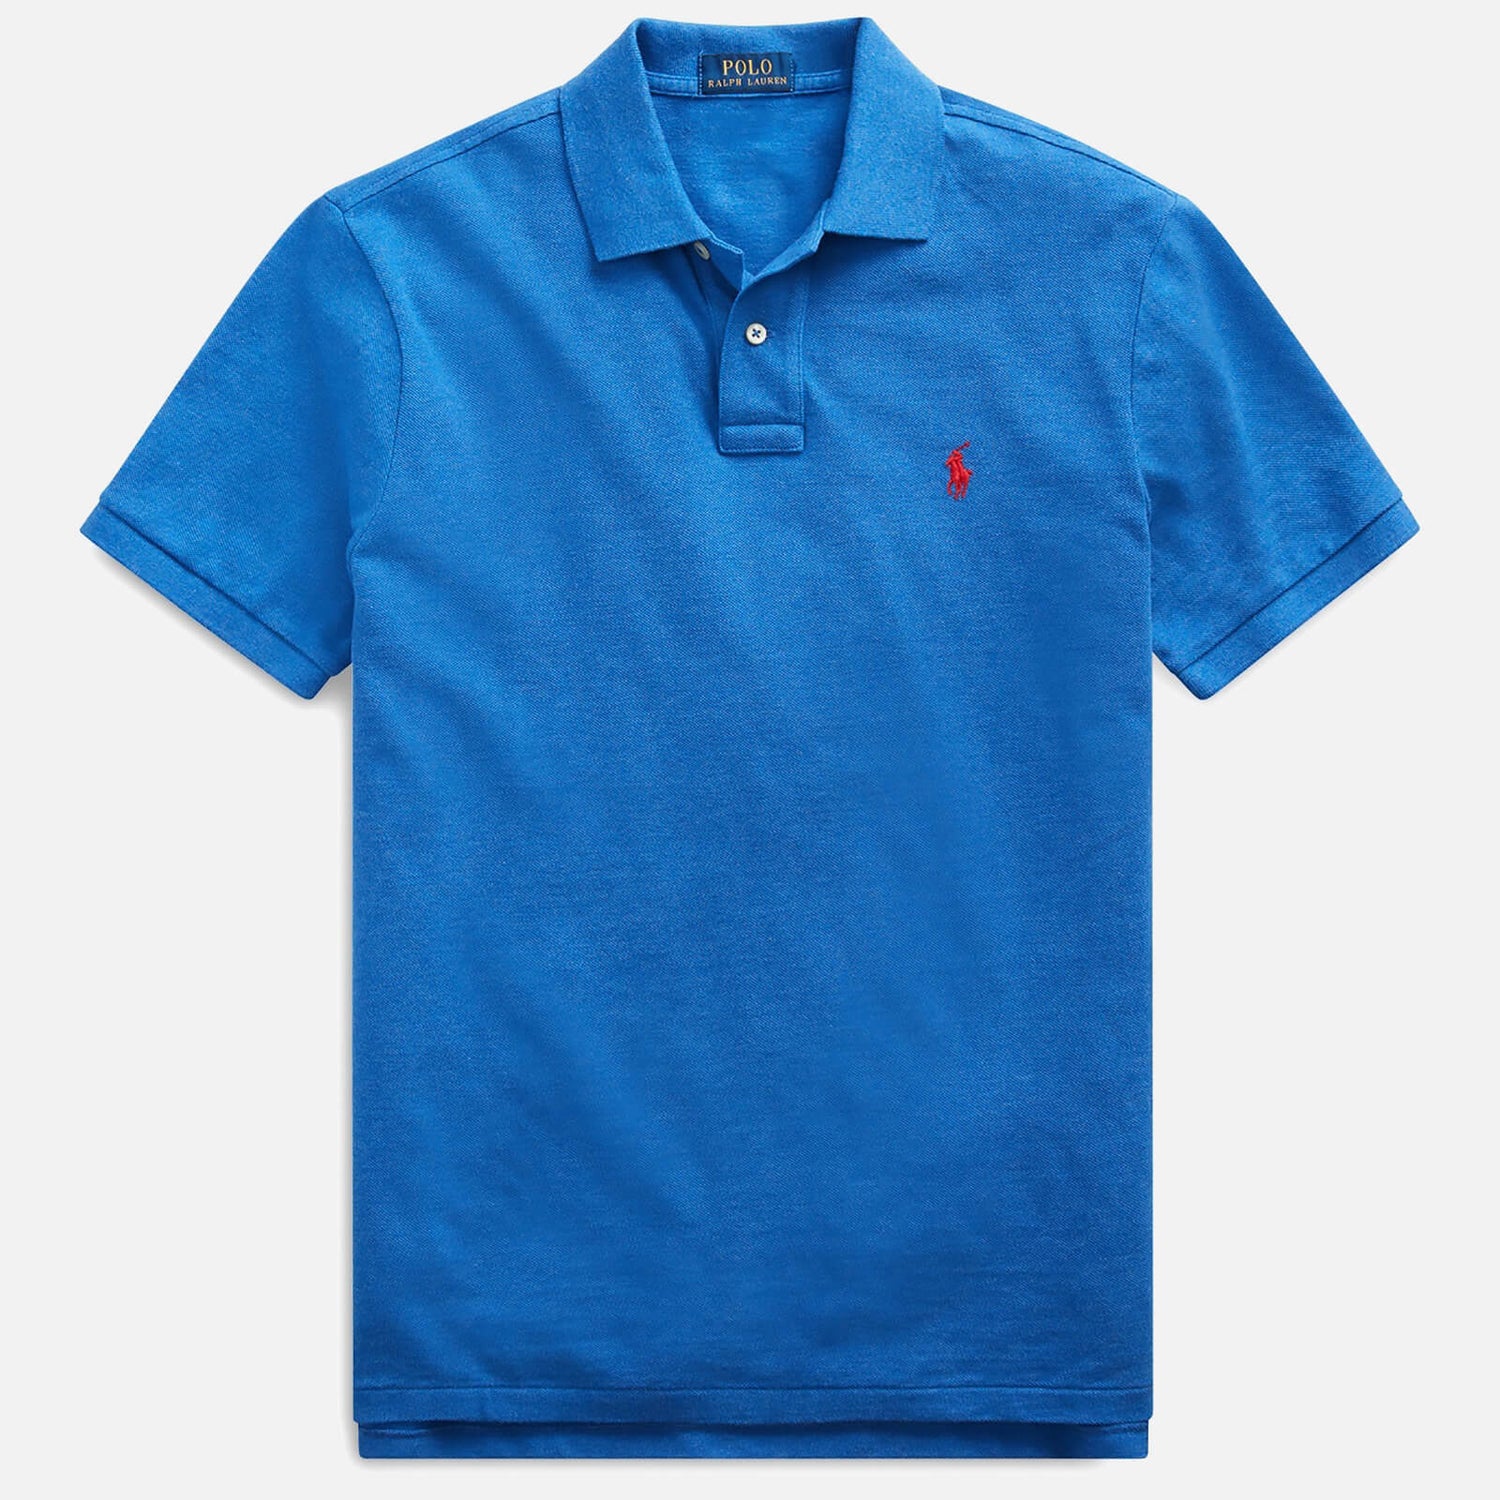 Polo Ralph Lauren Men's Custom Slim Fit Mesh Polo Shirt - Dockside Blue Heather - S